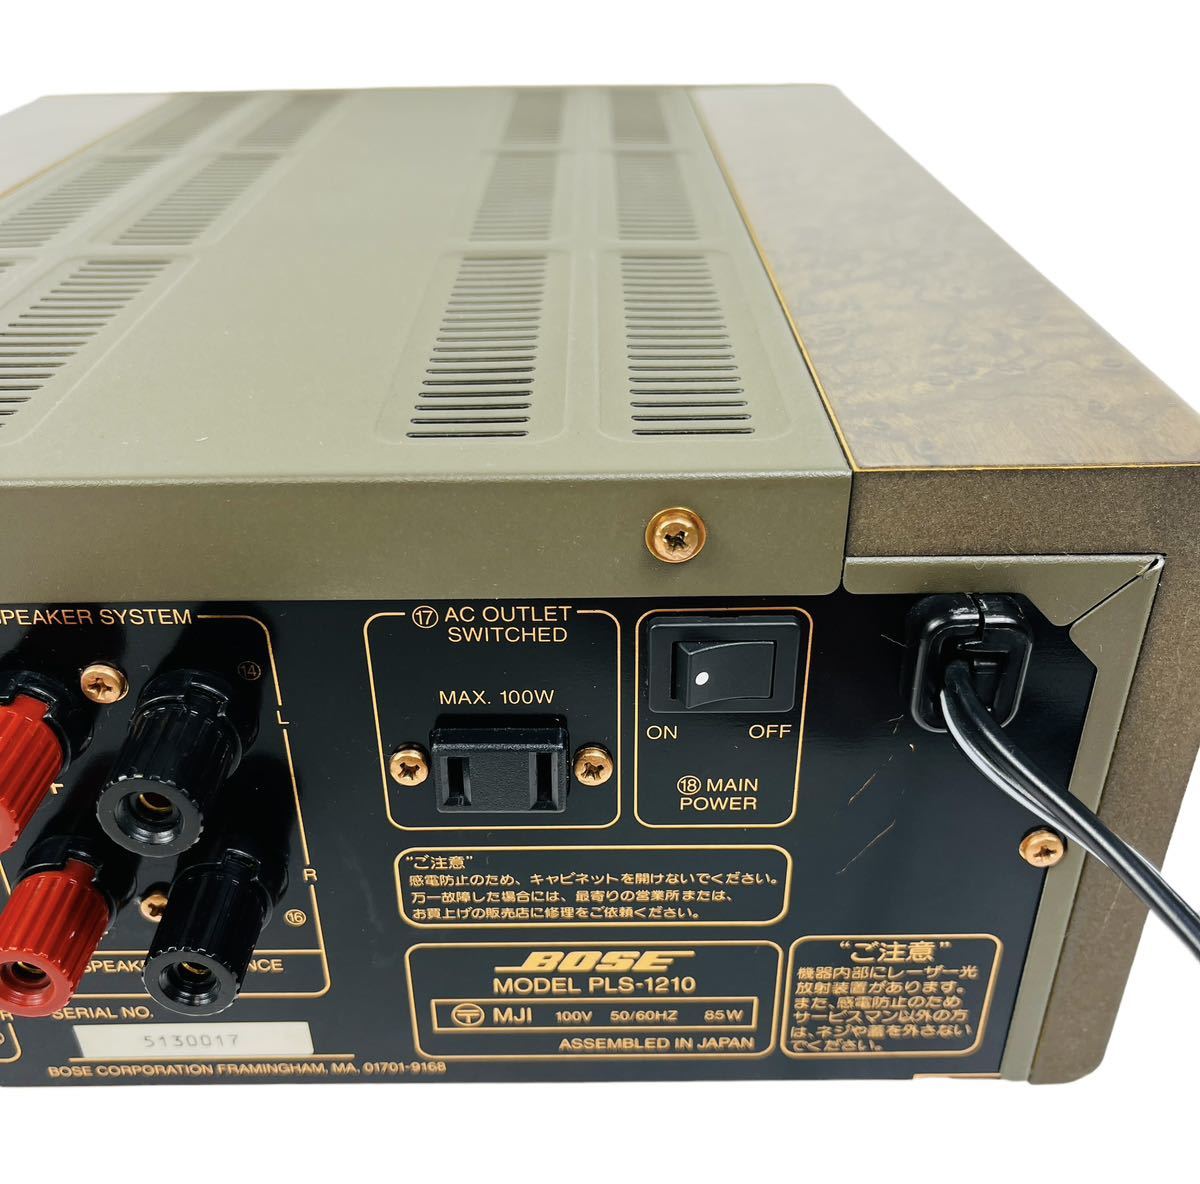 BOSE ボーズ CDレシーバー アンプ内蔵 PLS-1210 オーディオ機器 オーディオアンプ